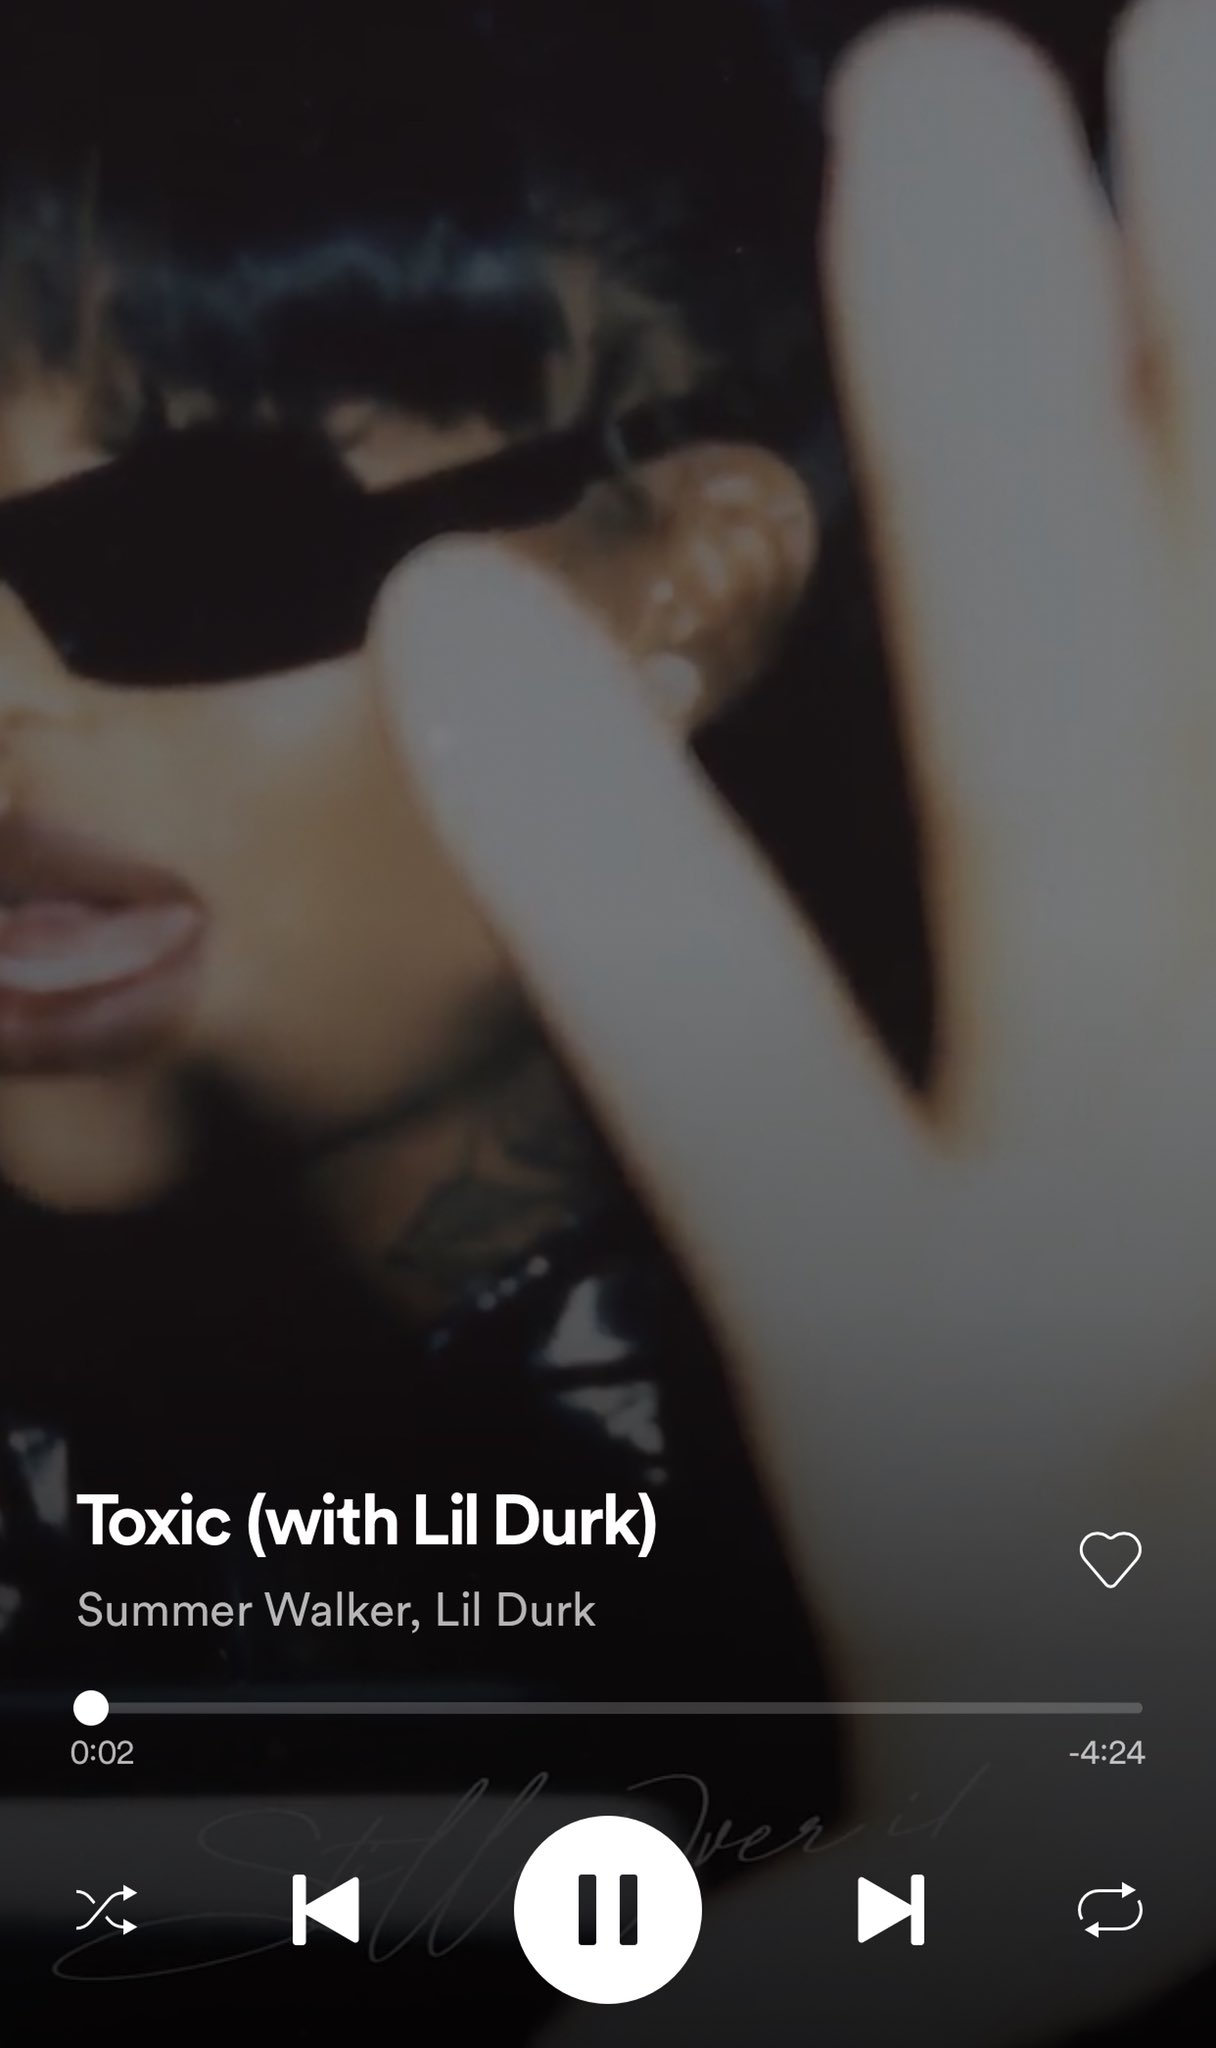 Toxic ft. Lil Durk (Tradução em Português) – Summer Walker